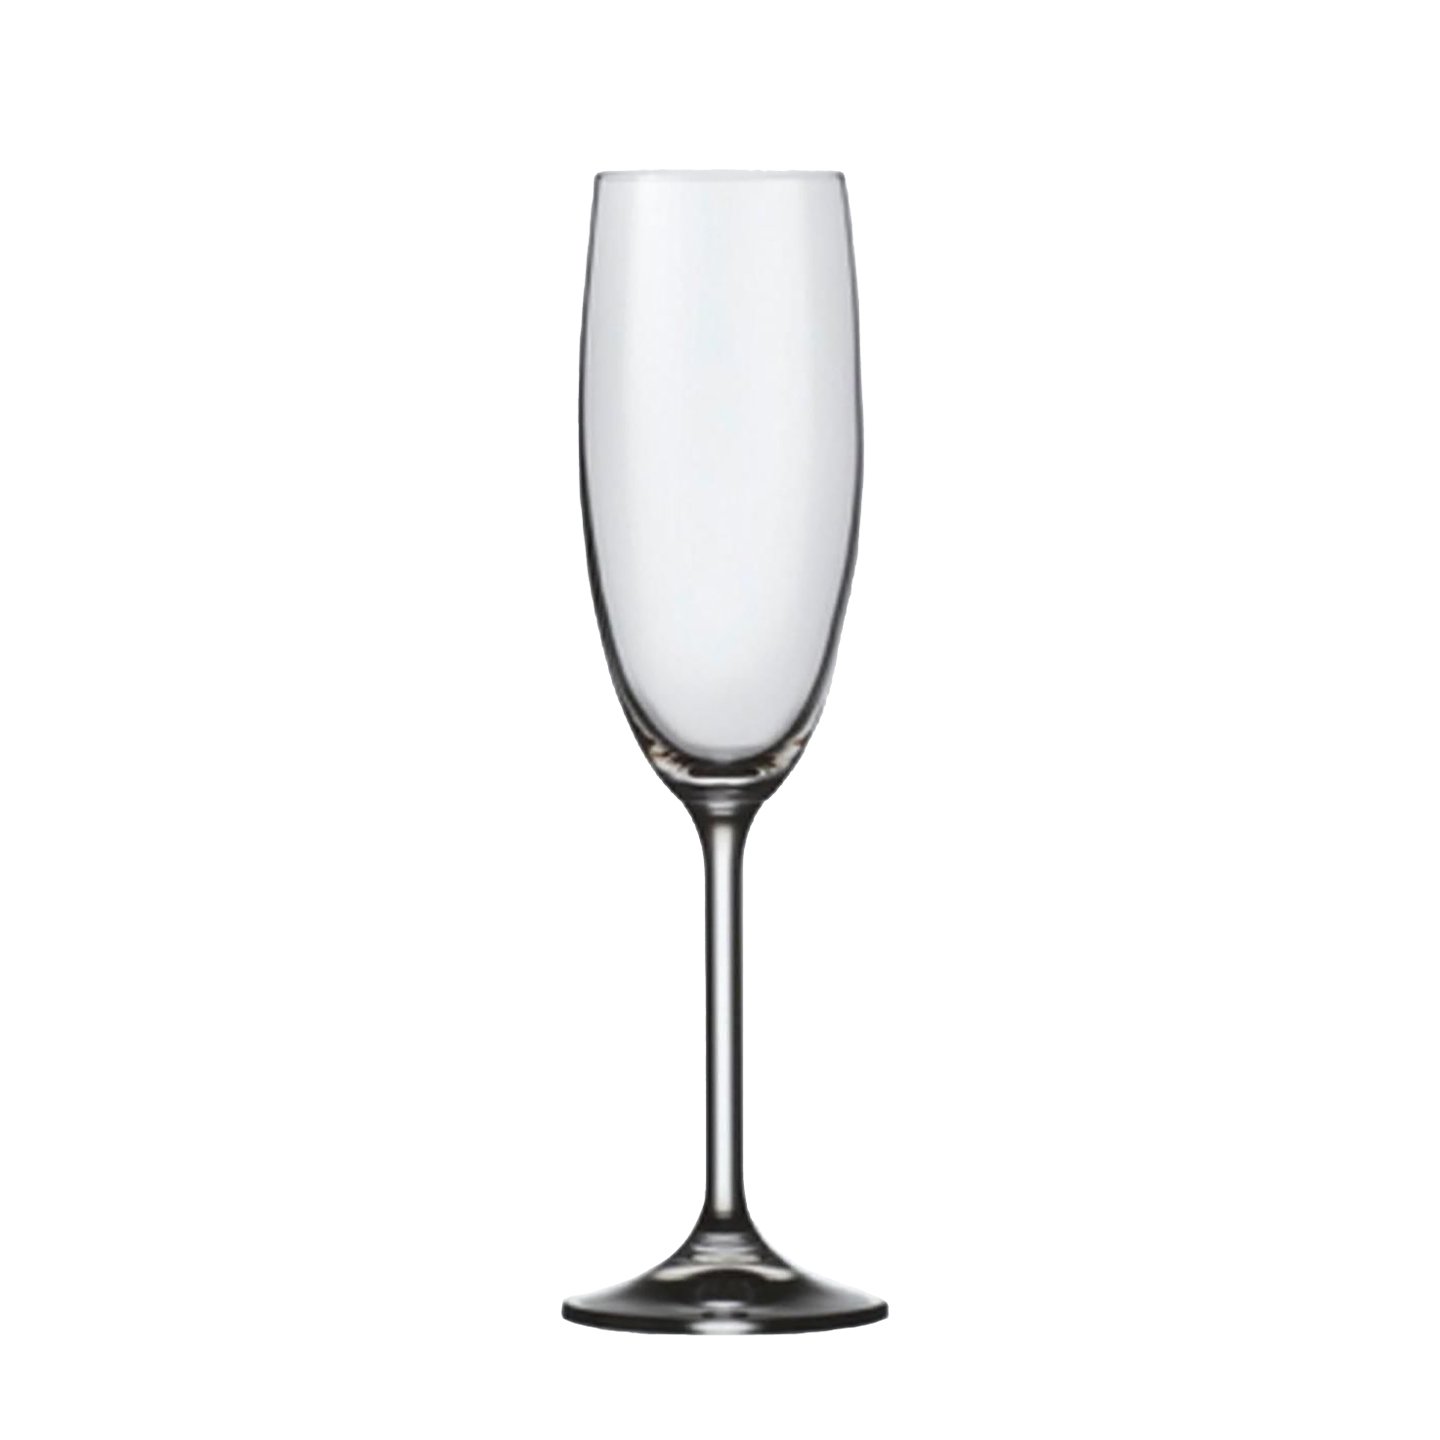 Pahar pentru șampanie, sticlă cristalină, 180 ml Carrefour 